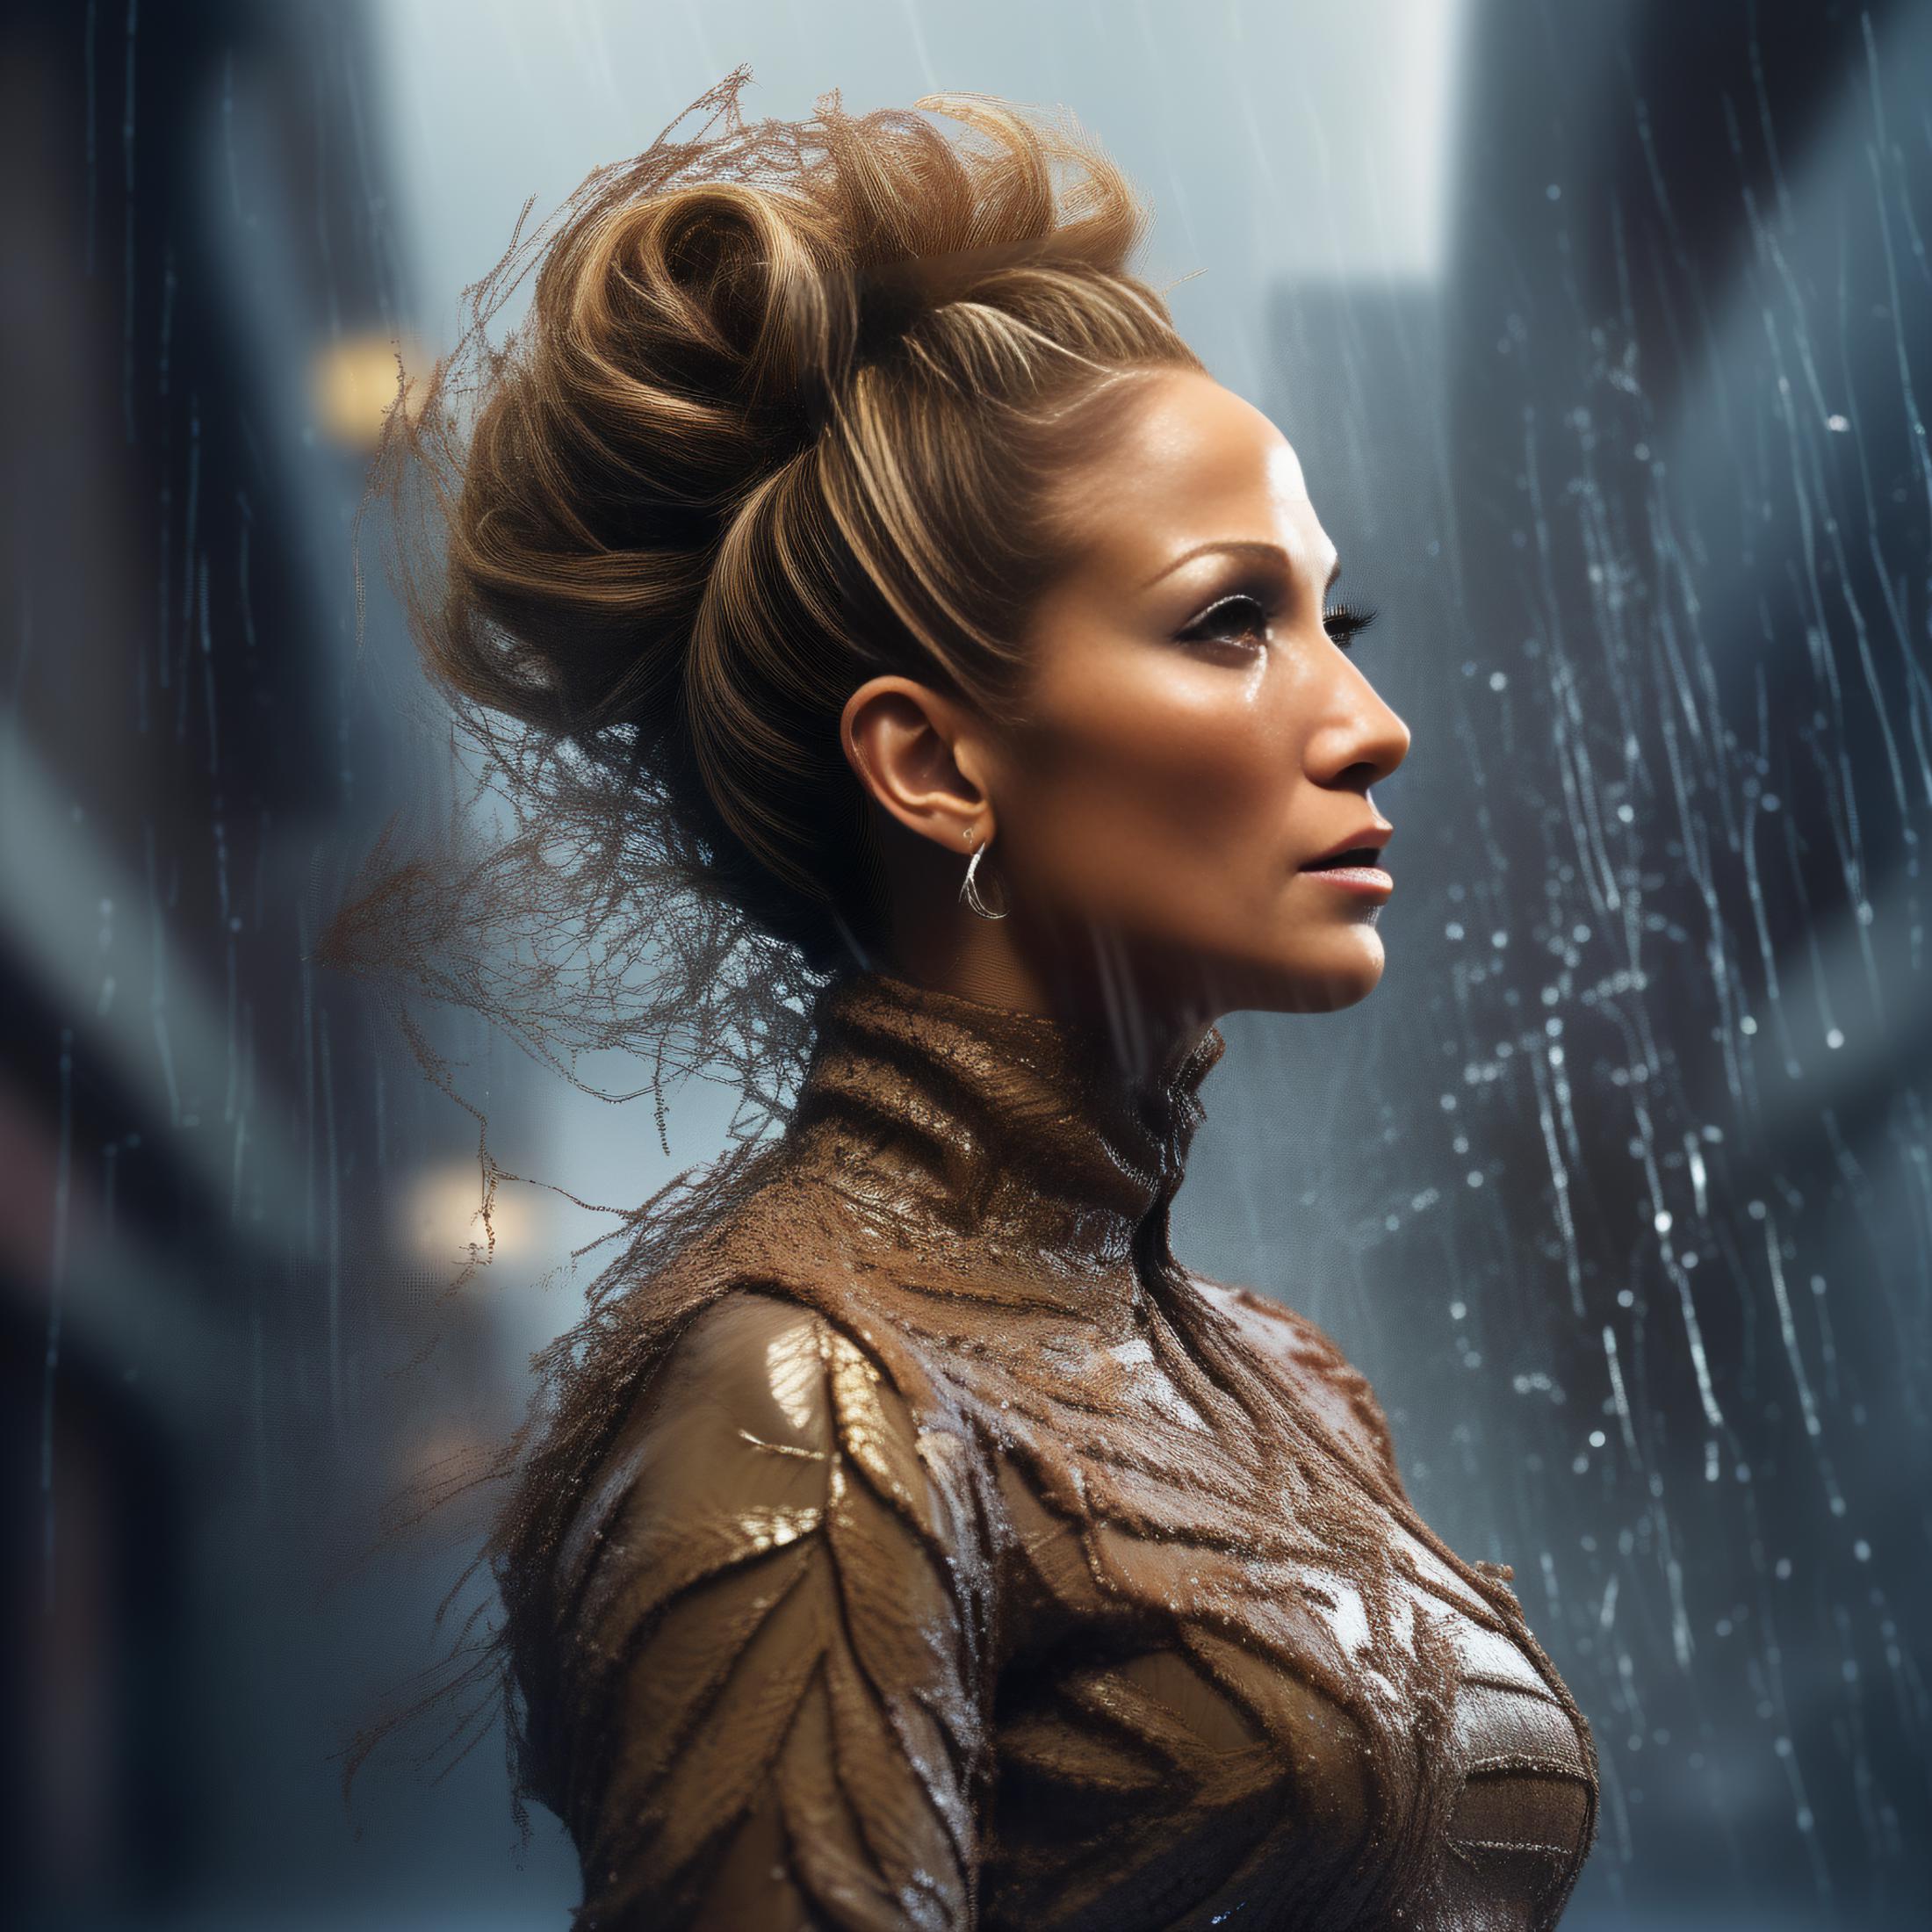 Jennifer Lopez image by parar20